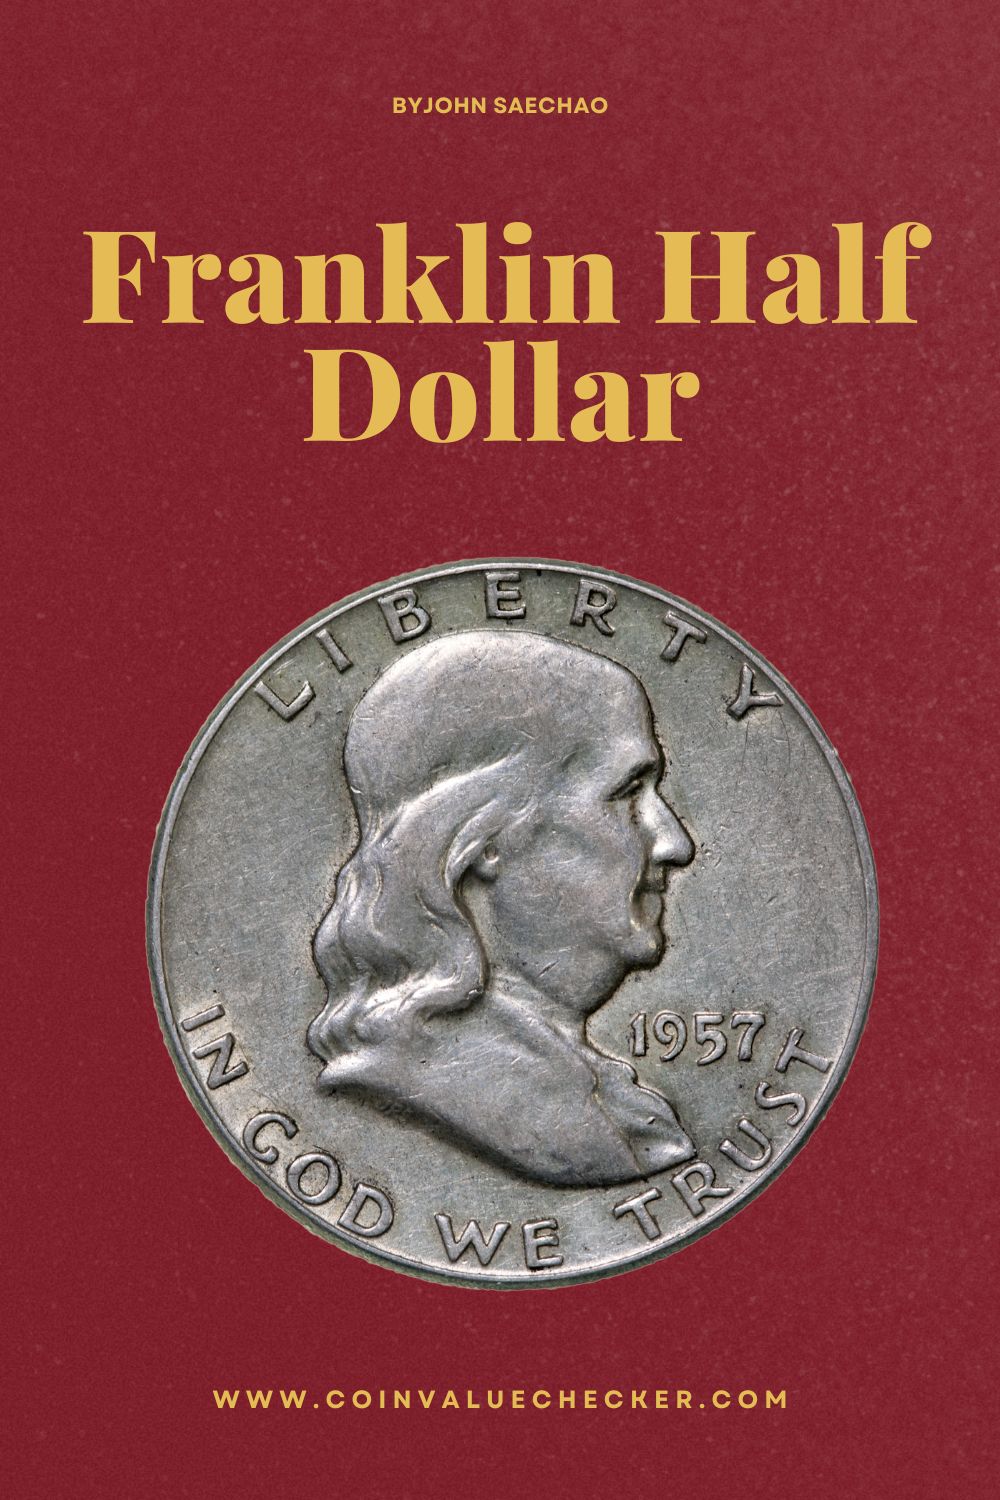 Franklin Half Dollar Value Guide